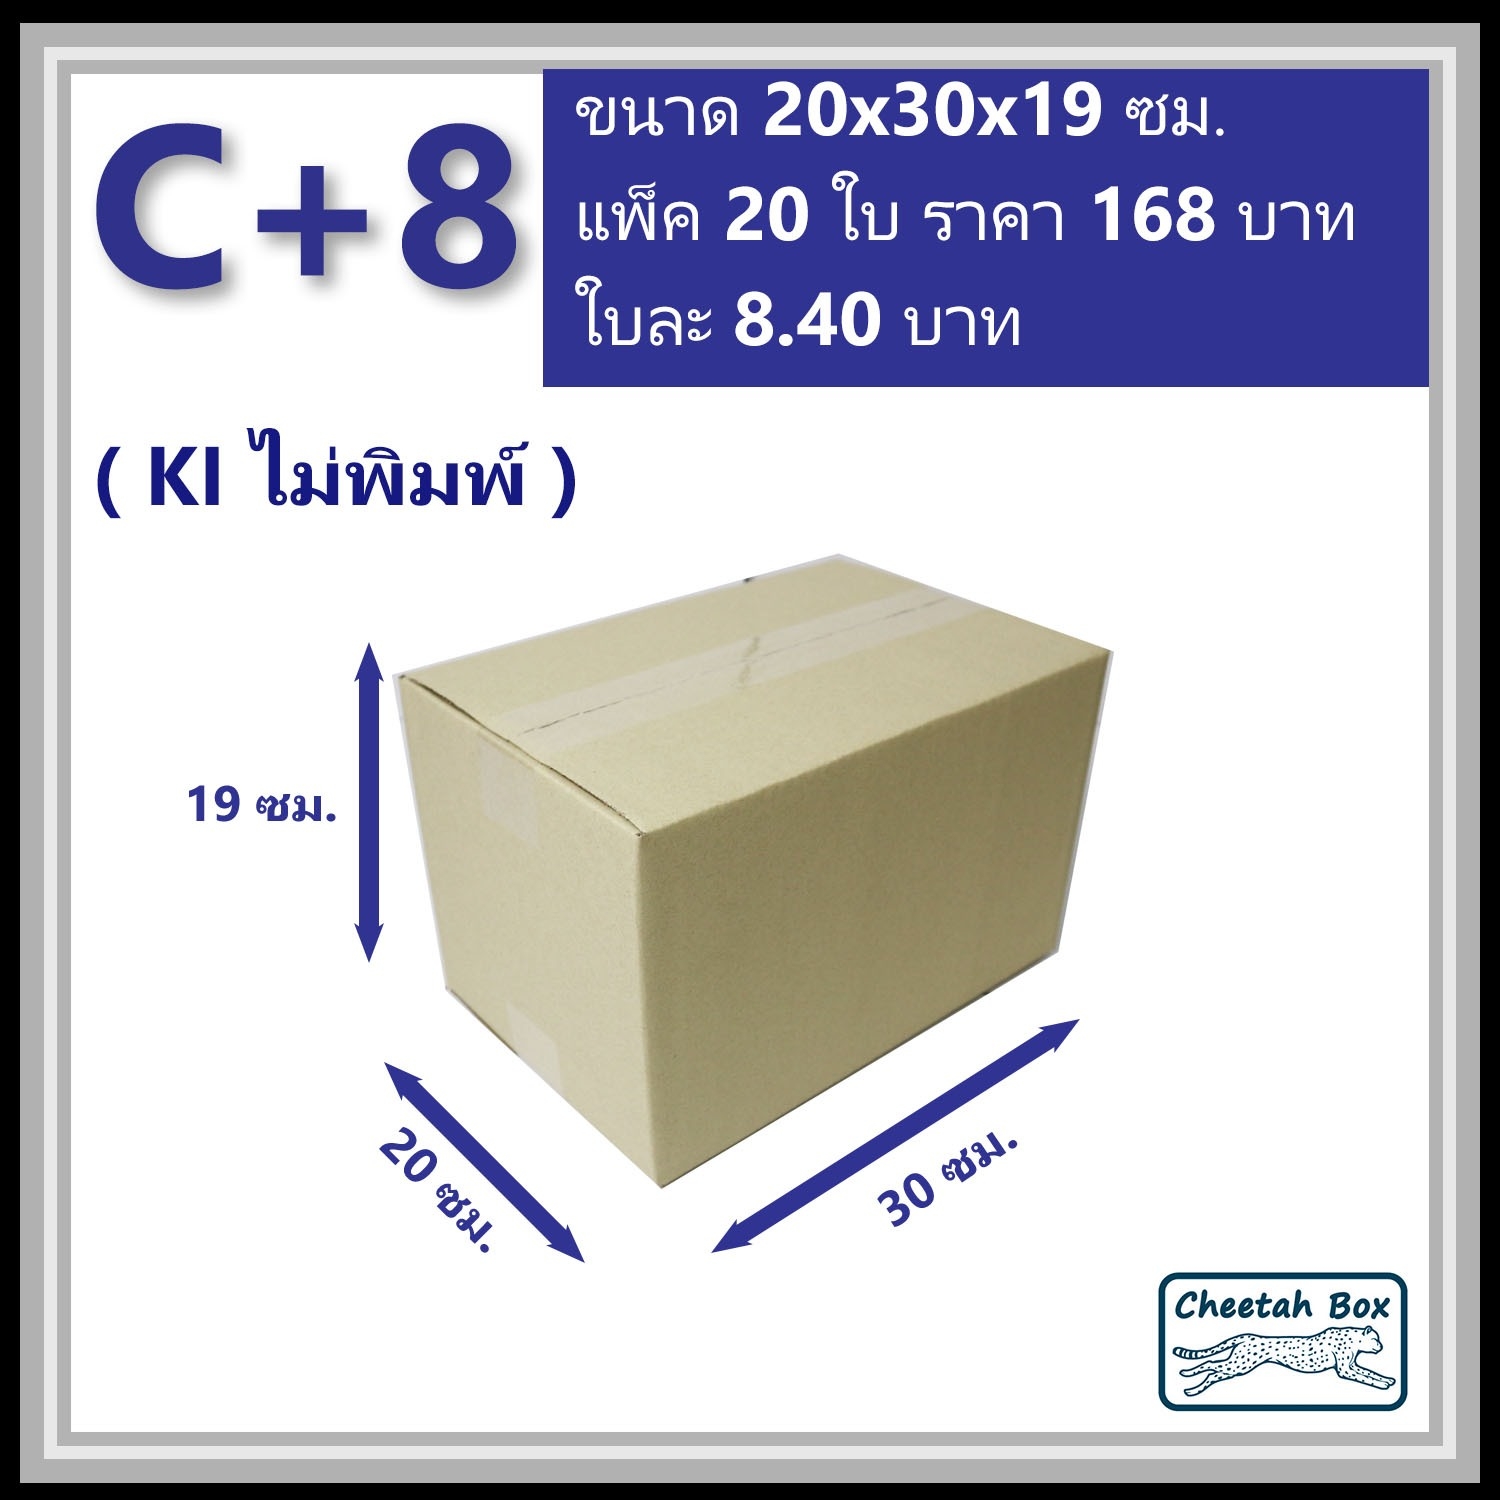 กล่องพัสดุ C+8 ไม่พิมพ์ (Post Box) ลูกฟูก 3 ชั้น ขนาด 20W x 30L x 19H cm.